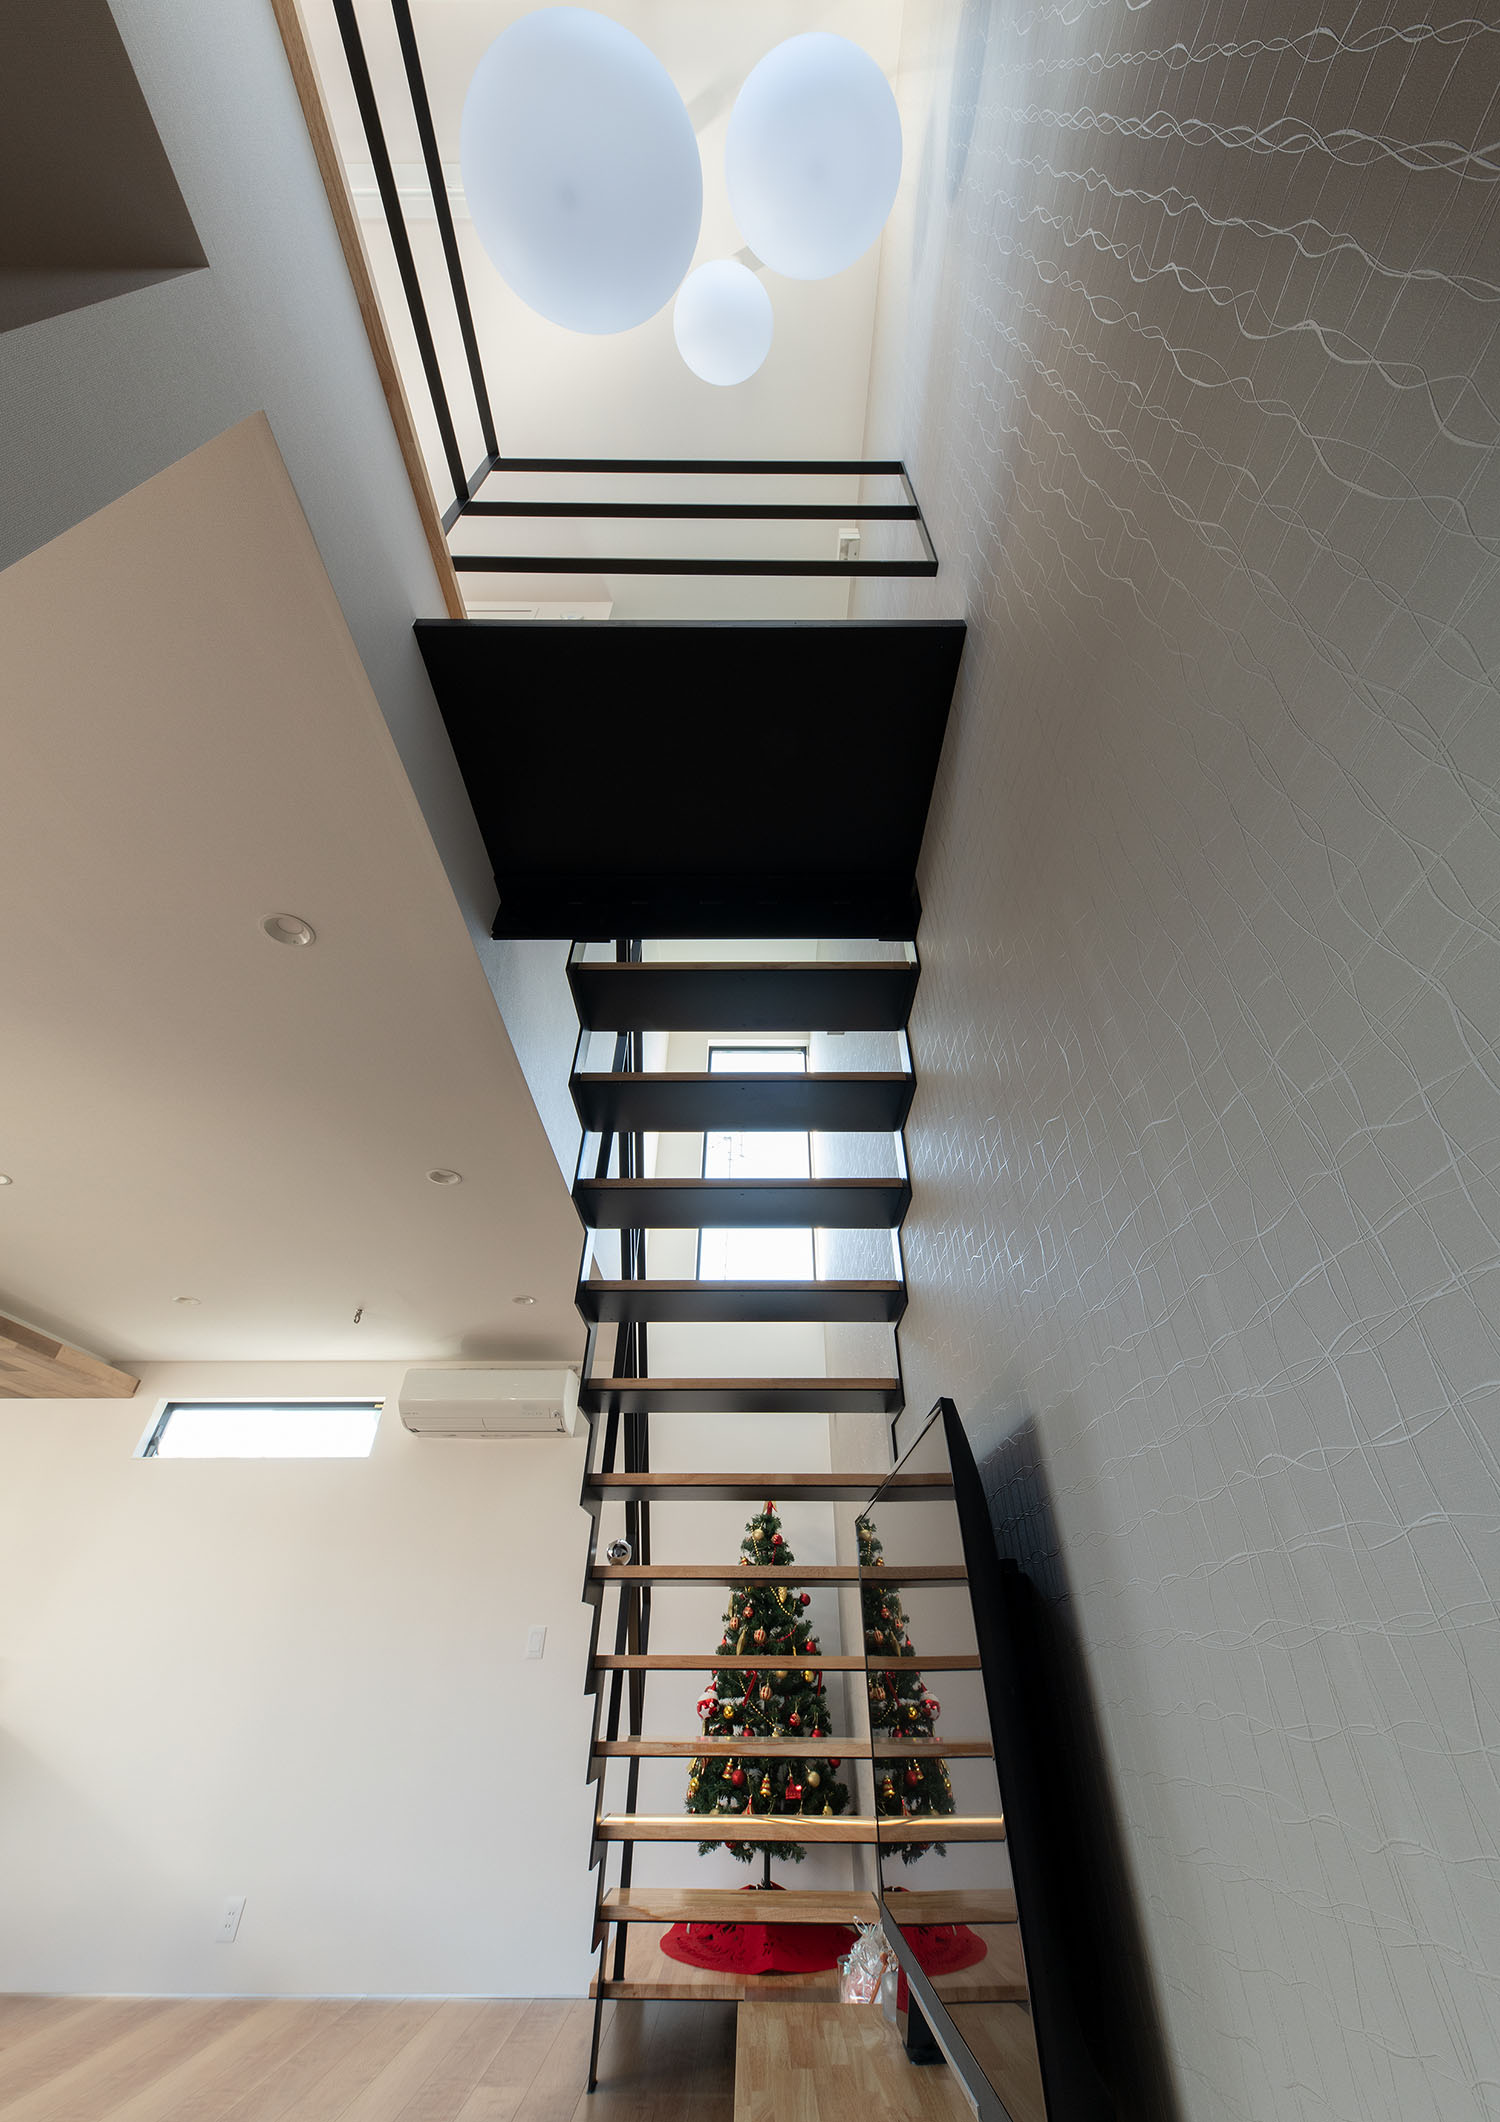 注文住宅・階段・吹き抜け・木製のスケルトン階段・アイアンの手すり・リビングイン階段